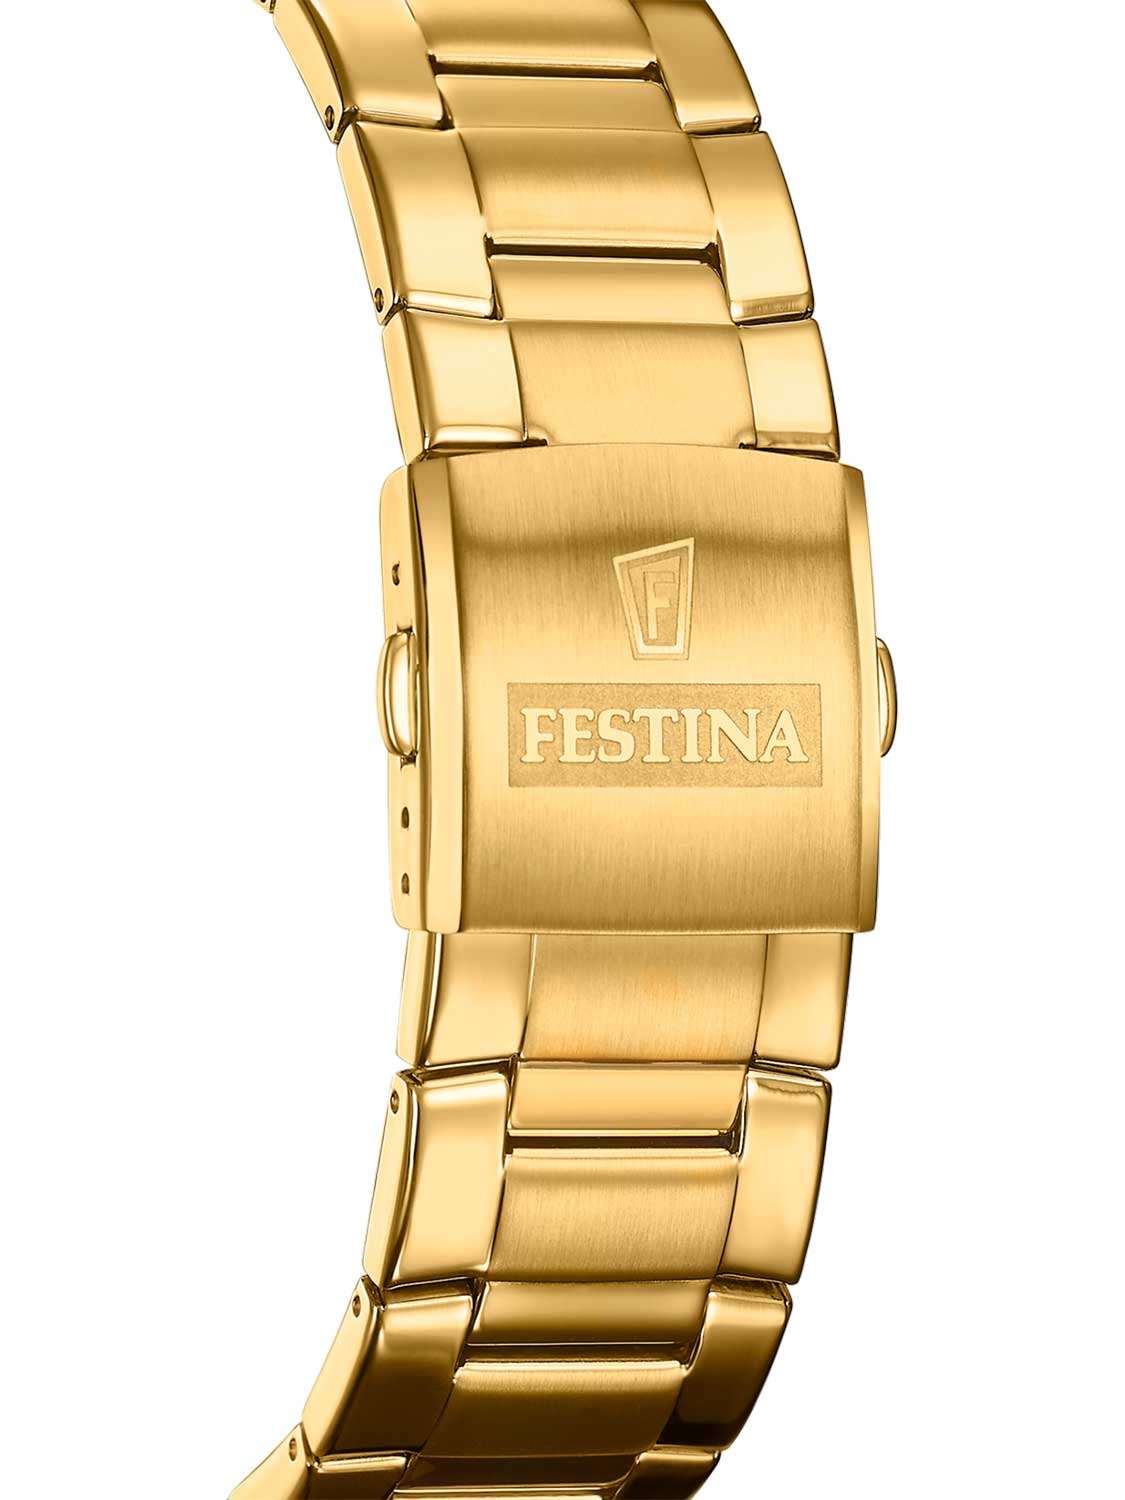 Наручные часы Festina характеристики, цене, интернет-магазине по в F20541/4 фото, AllTime.ru купить лучшей — описание